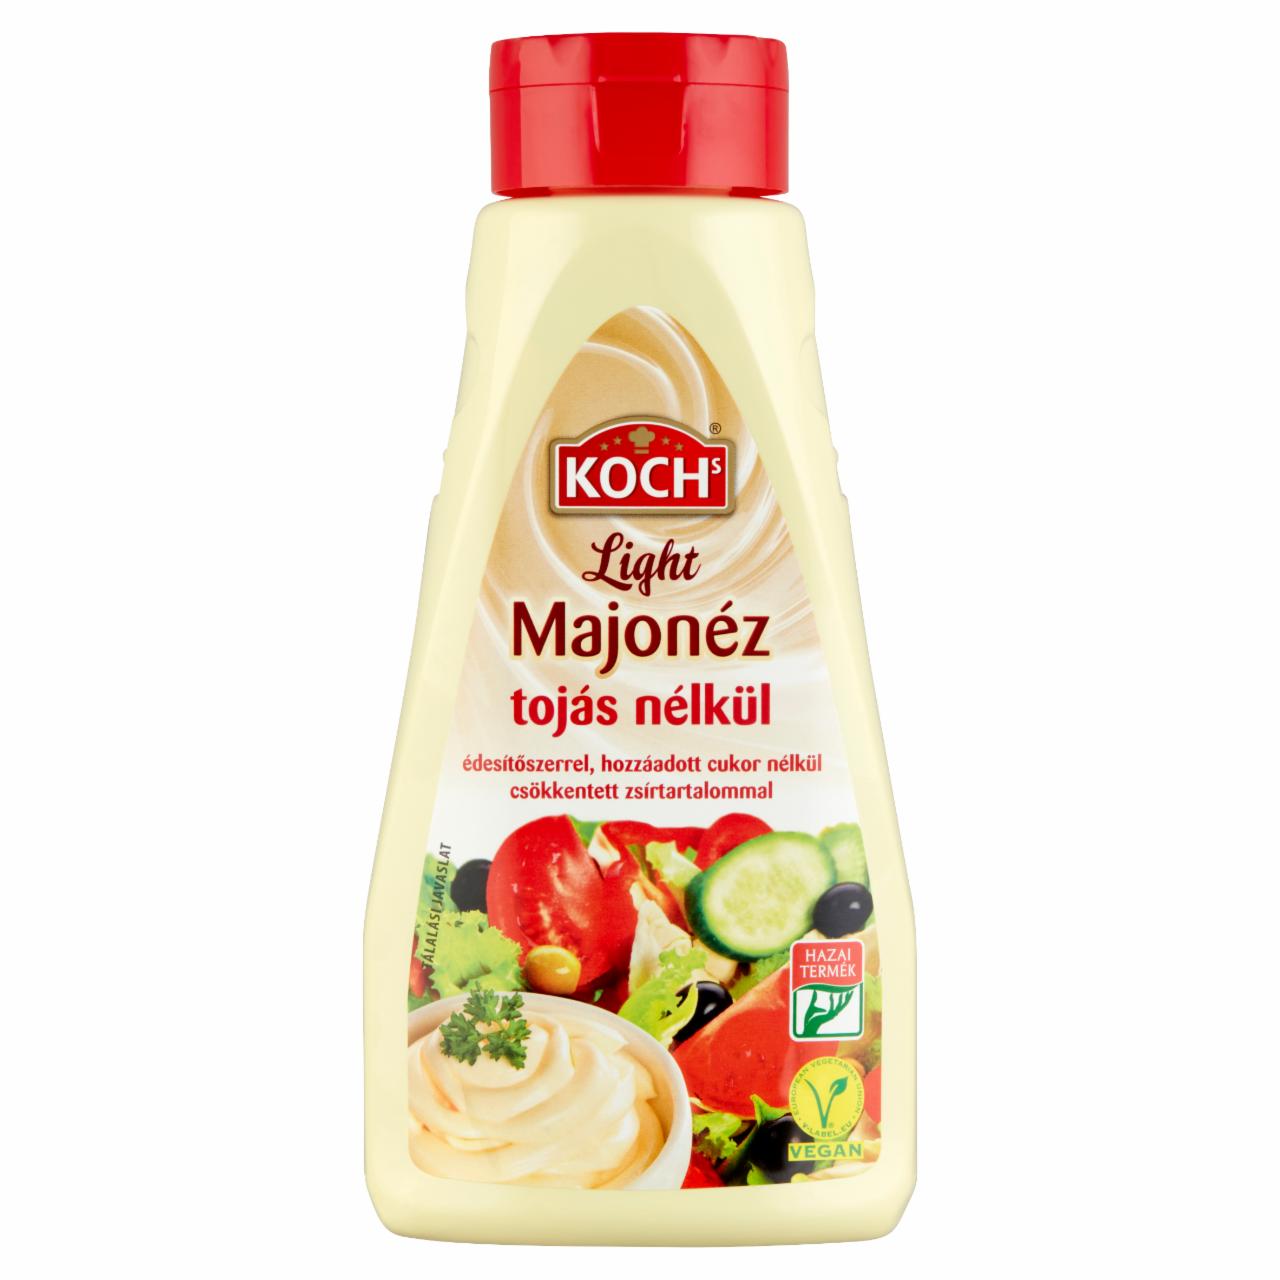 Képek - Koch's Light majonéz tojás nélkül édesítőszerrel, csökkentett zsírtartalommal 450 g